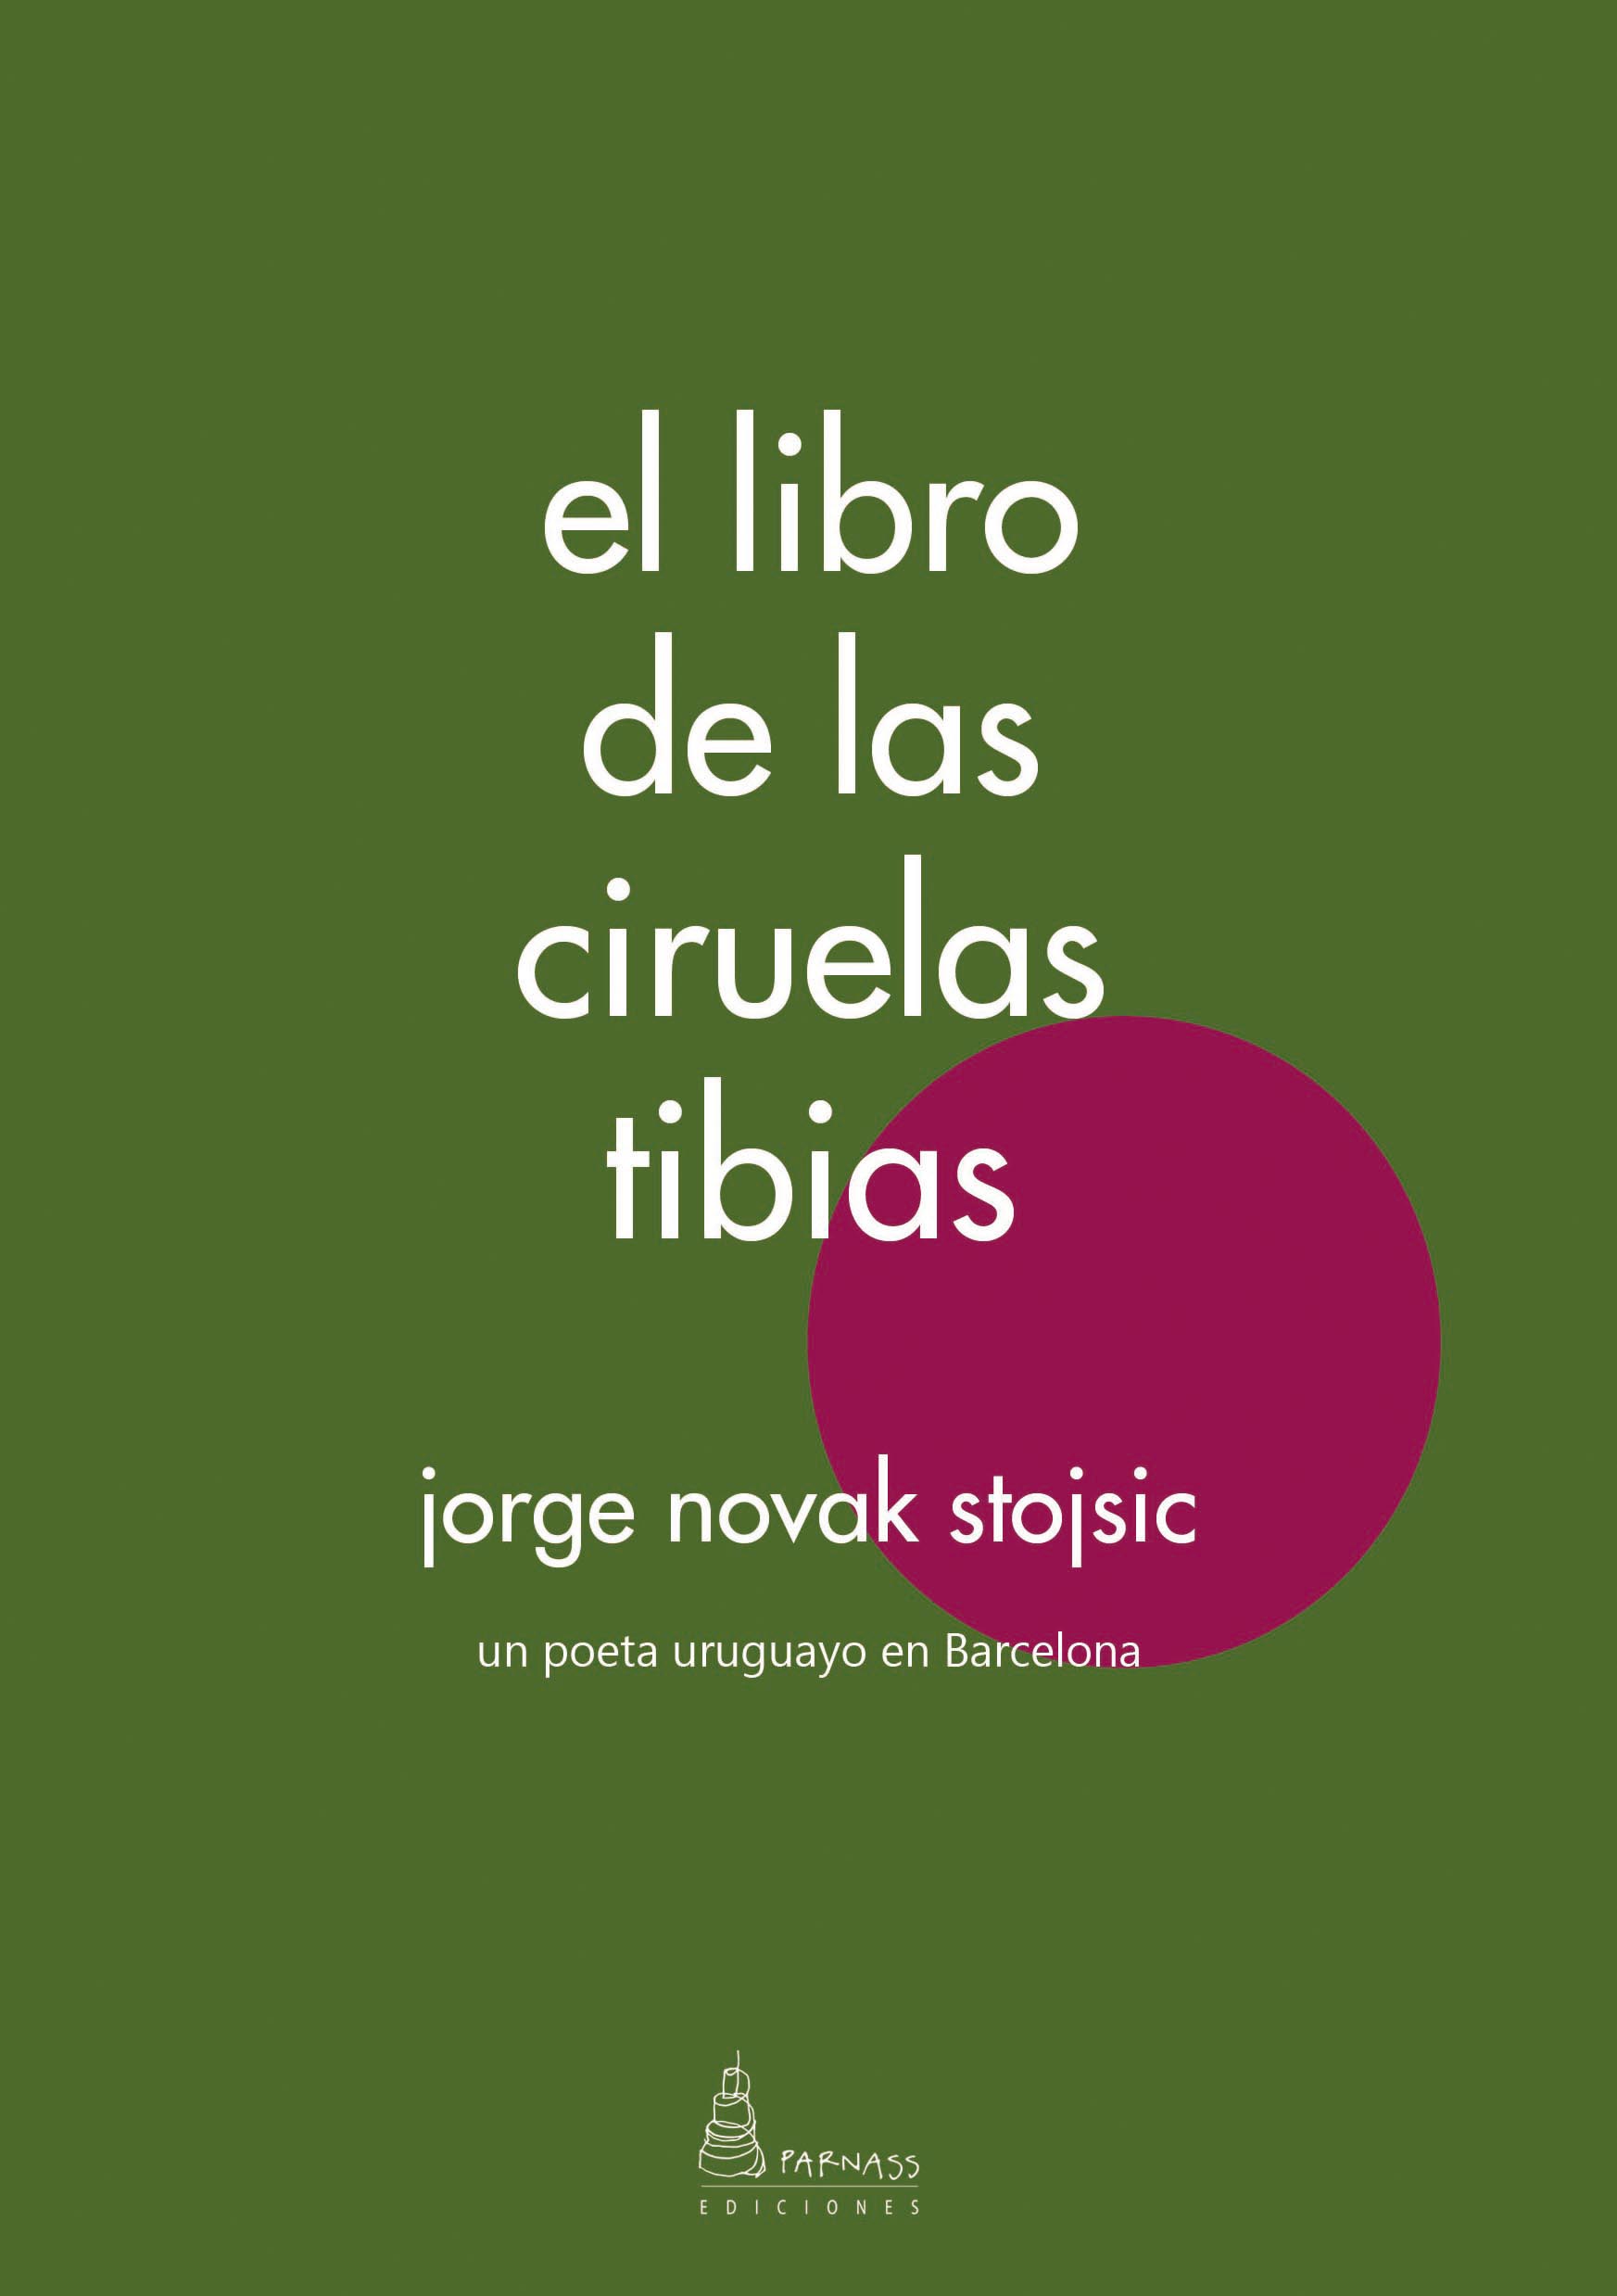 Portada del poemario de Jorge Novak, «el libro de las ciruelas tibias»